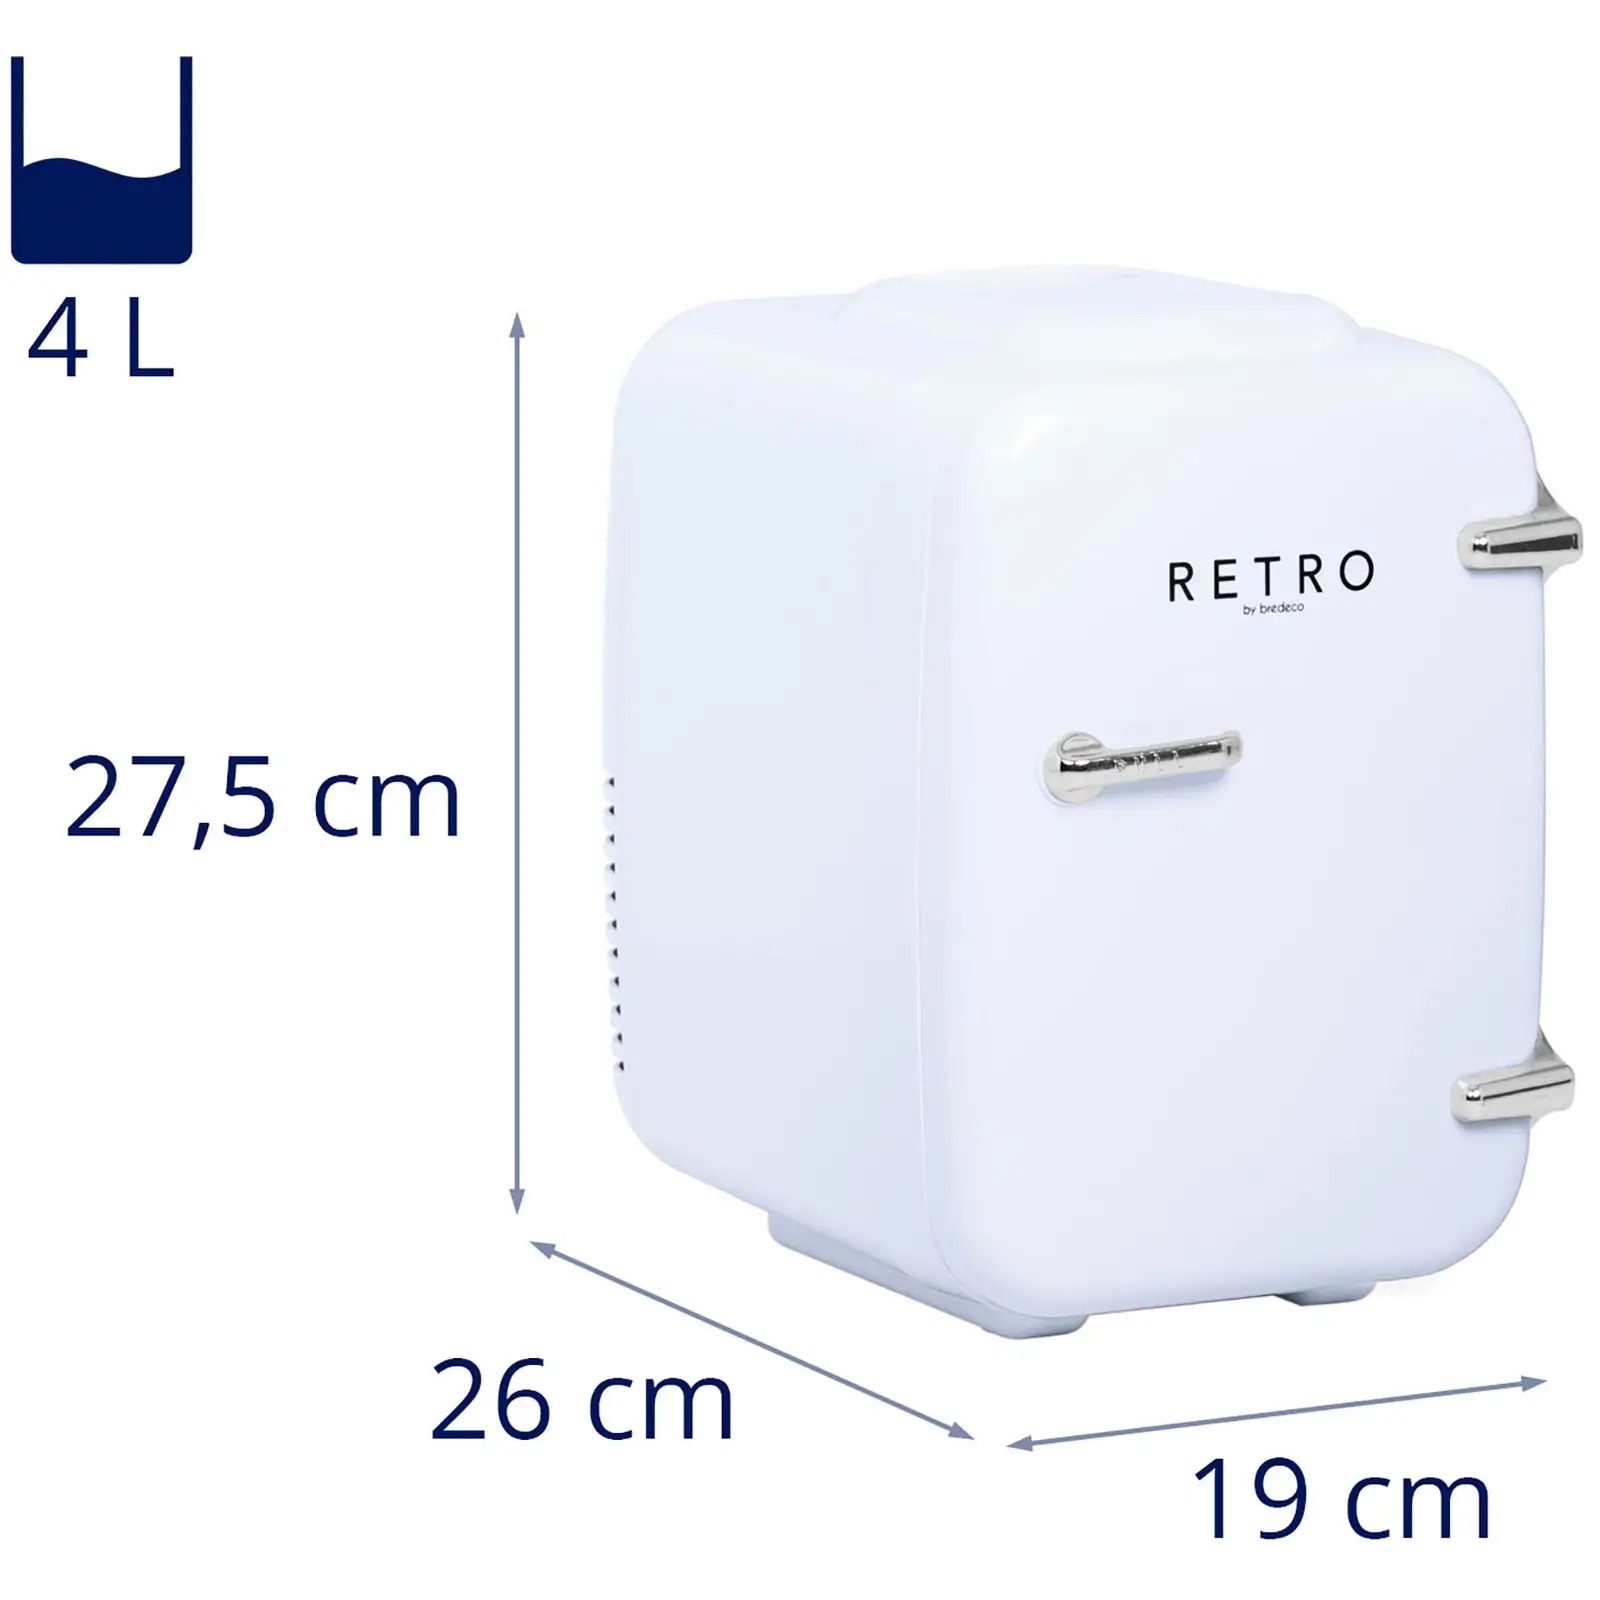 Mini Refrigerator - 4 L - white